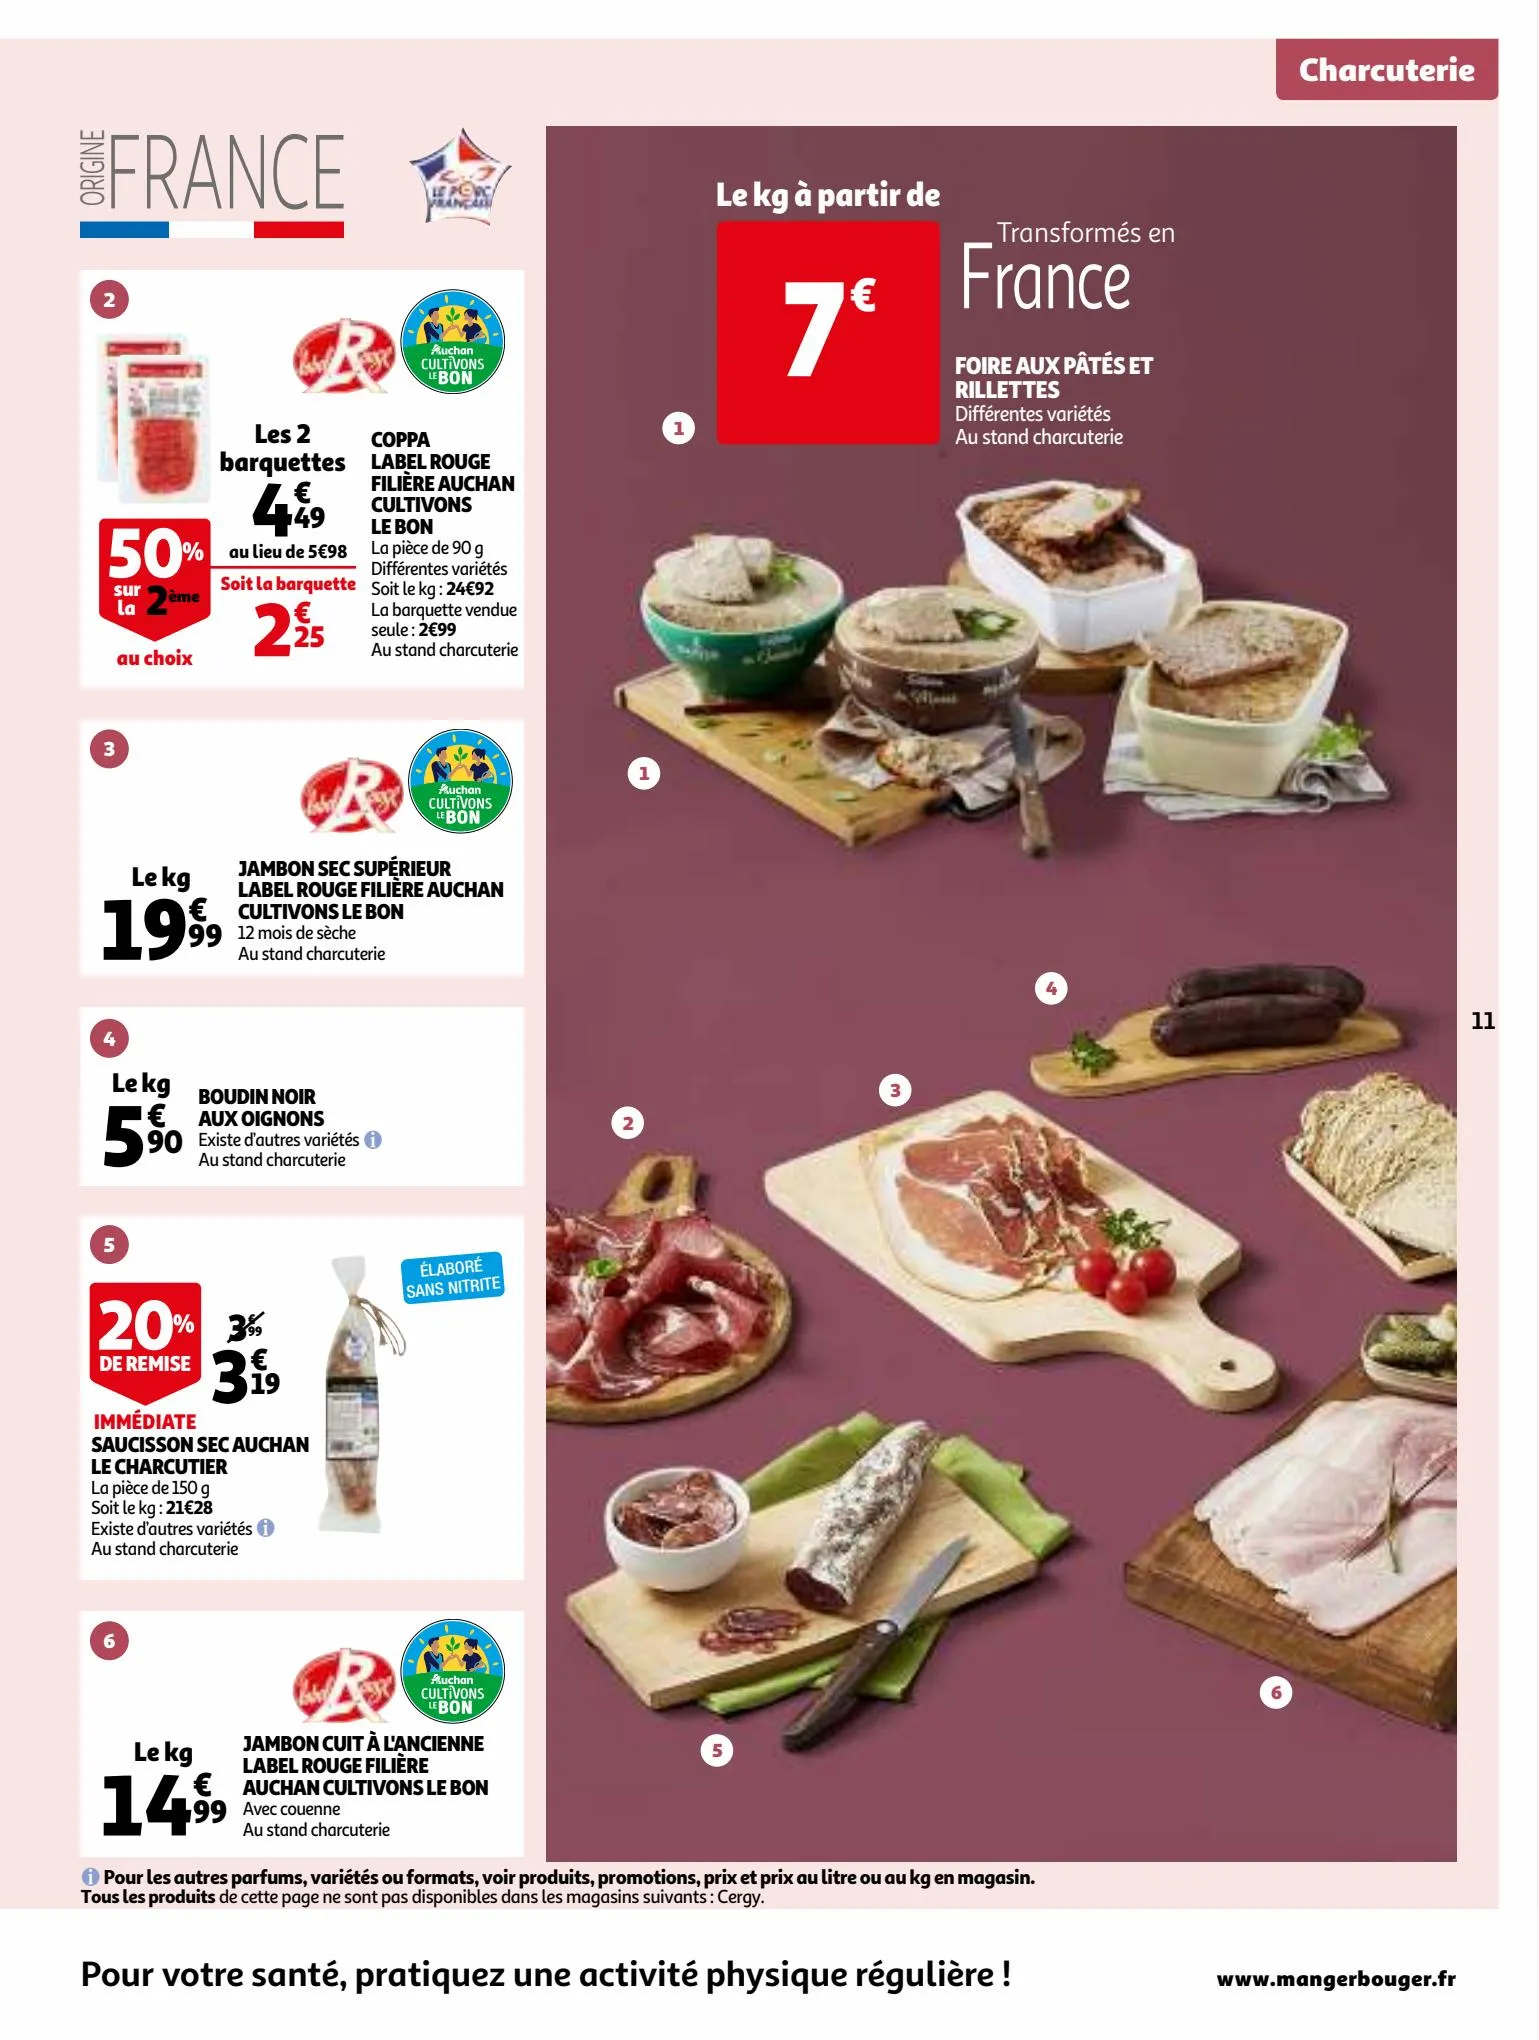 Catalogue 25 jours Auchan, page 00011